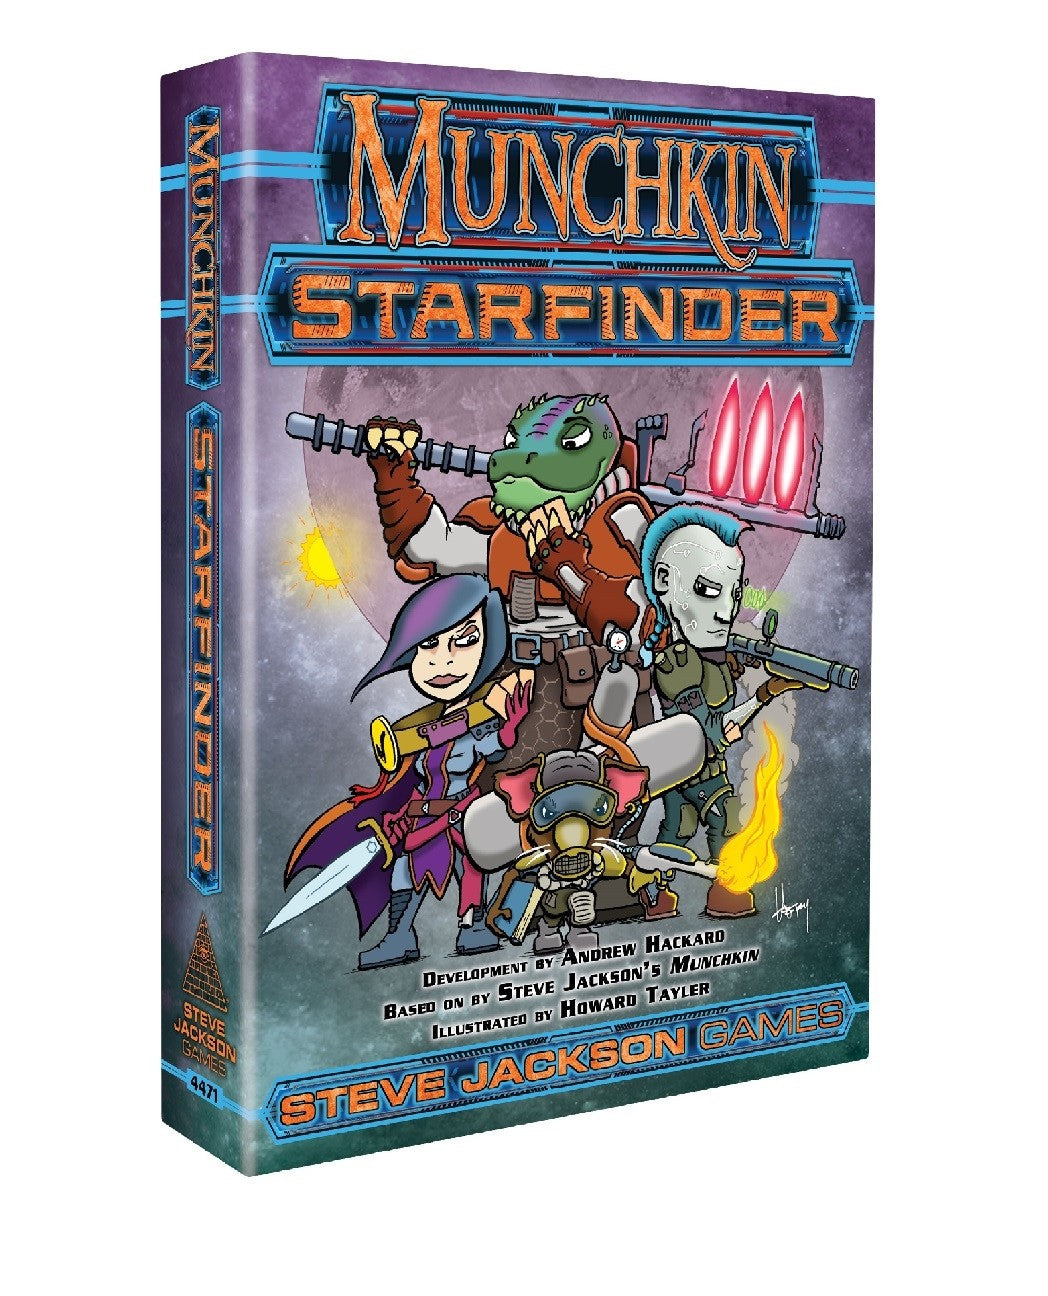 Munchkin Starfinder